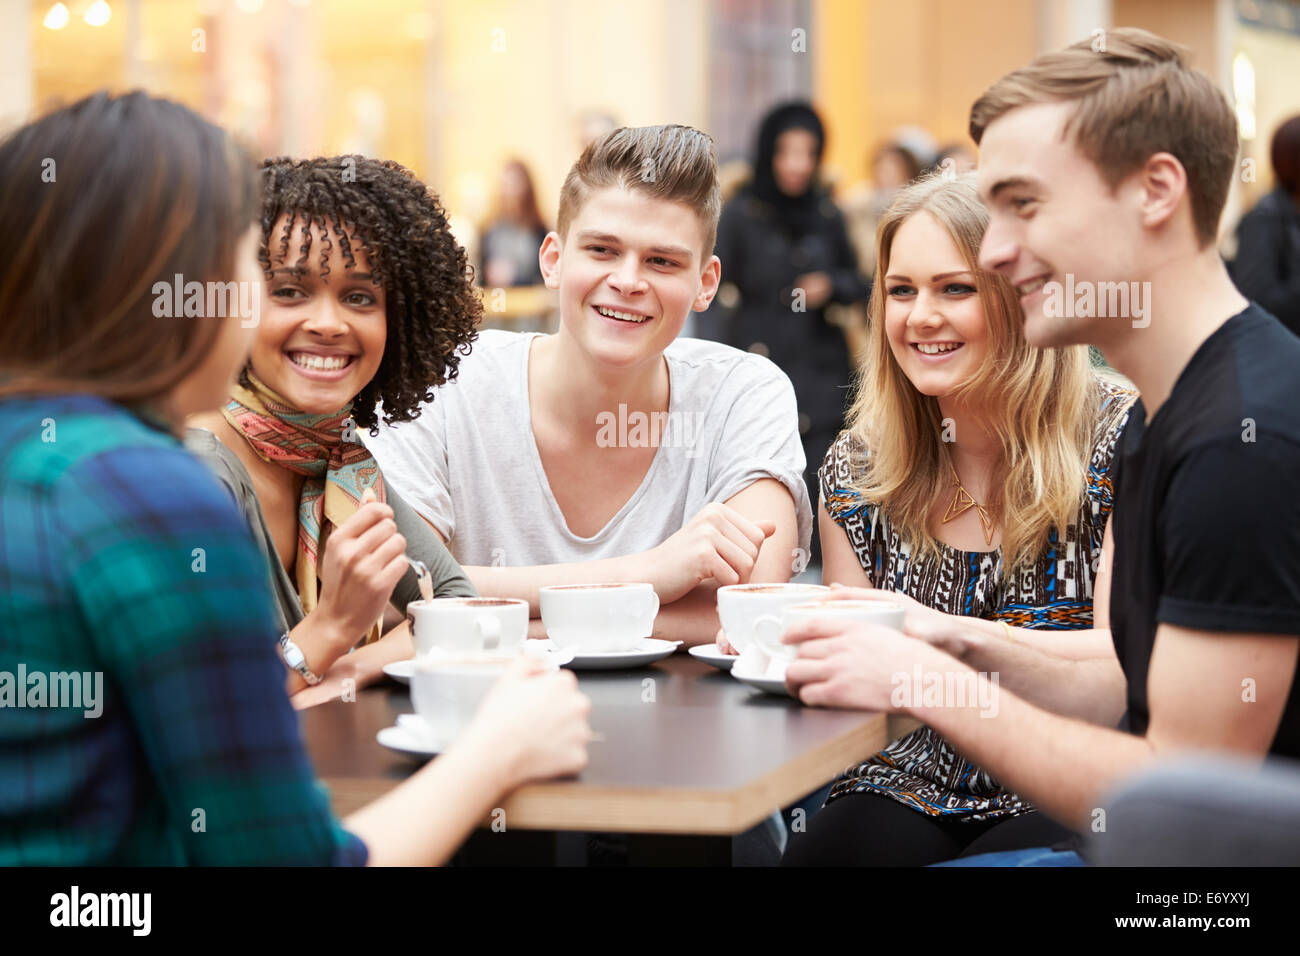 Gruppe von jungen Freunde treffen im Café Stockfoto, Bild ...